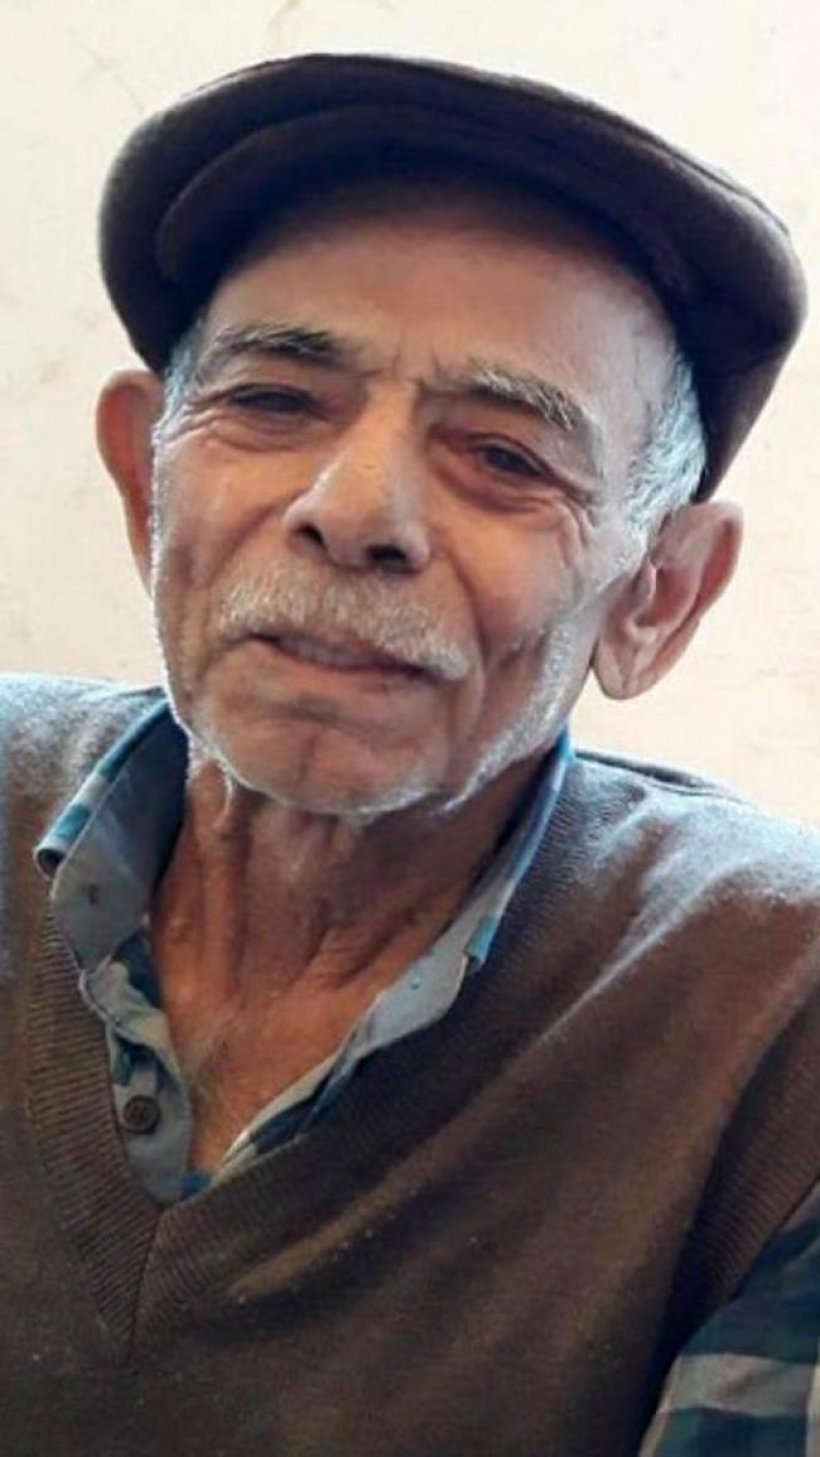 Gazipaşa'da 81 yaşındaki adamın başından vurulmuş cesedi bulundu